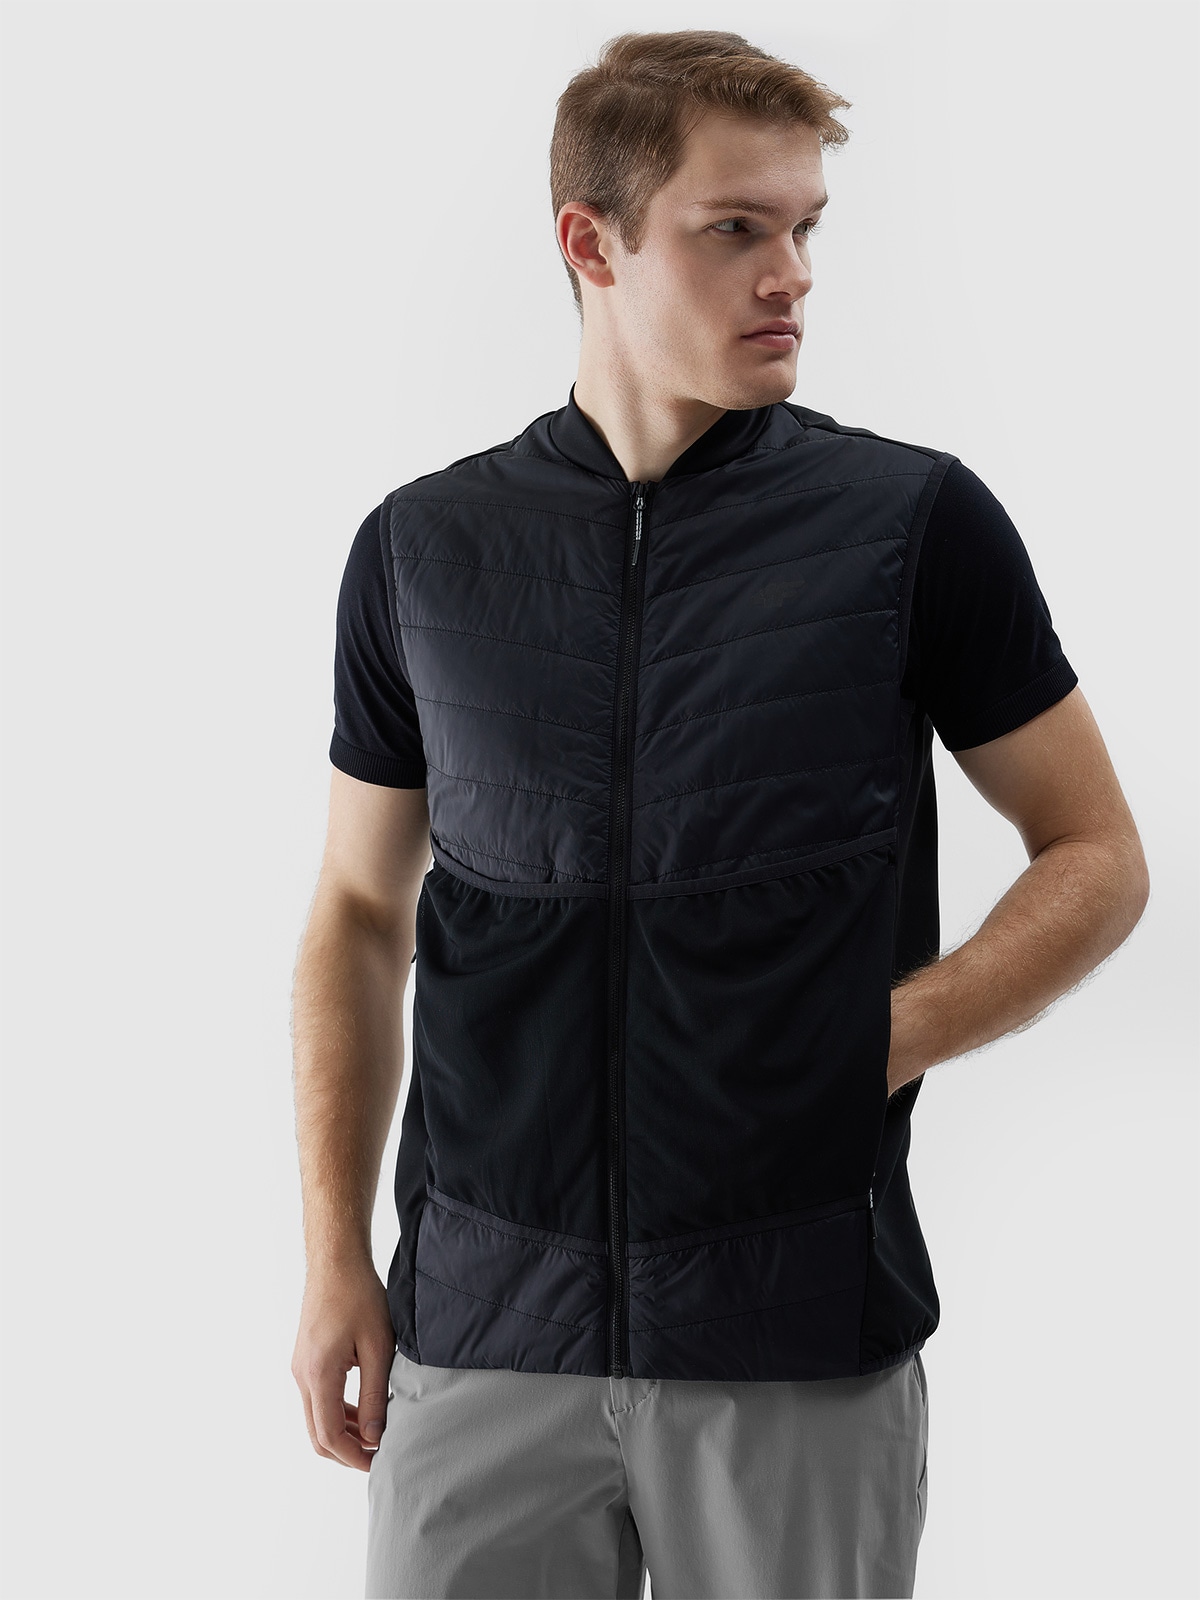 Pánska trekingová zatepľovacia vesta s výplňou PrimaLoft Black Eco - čierna